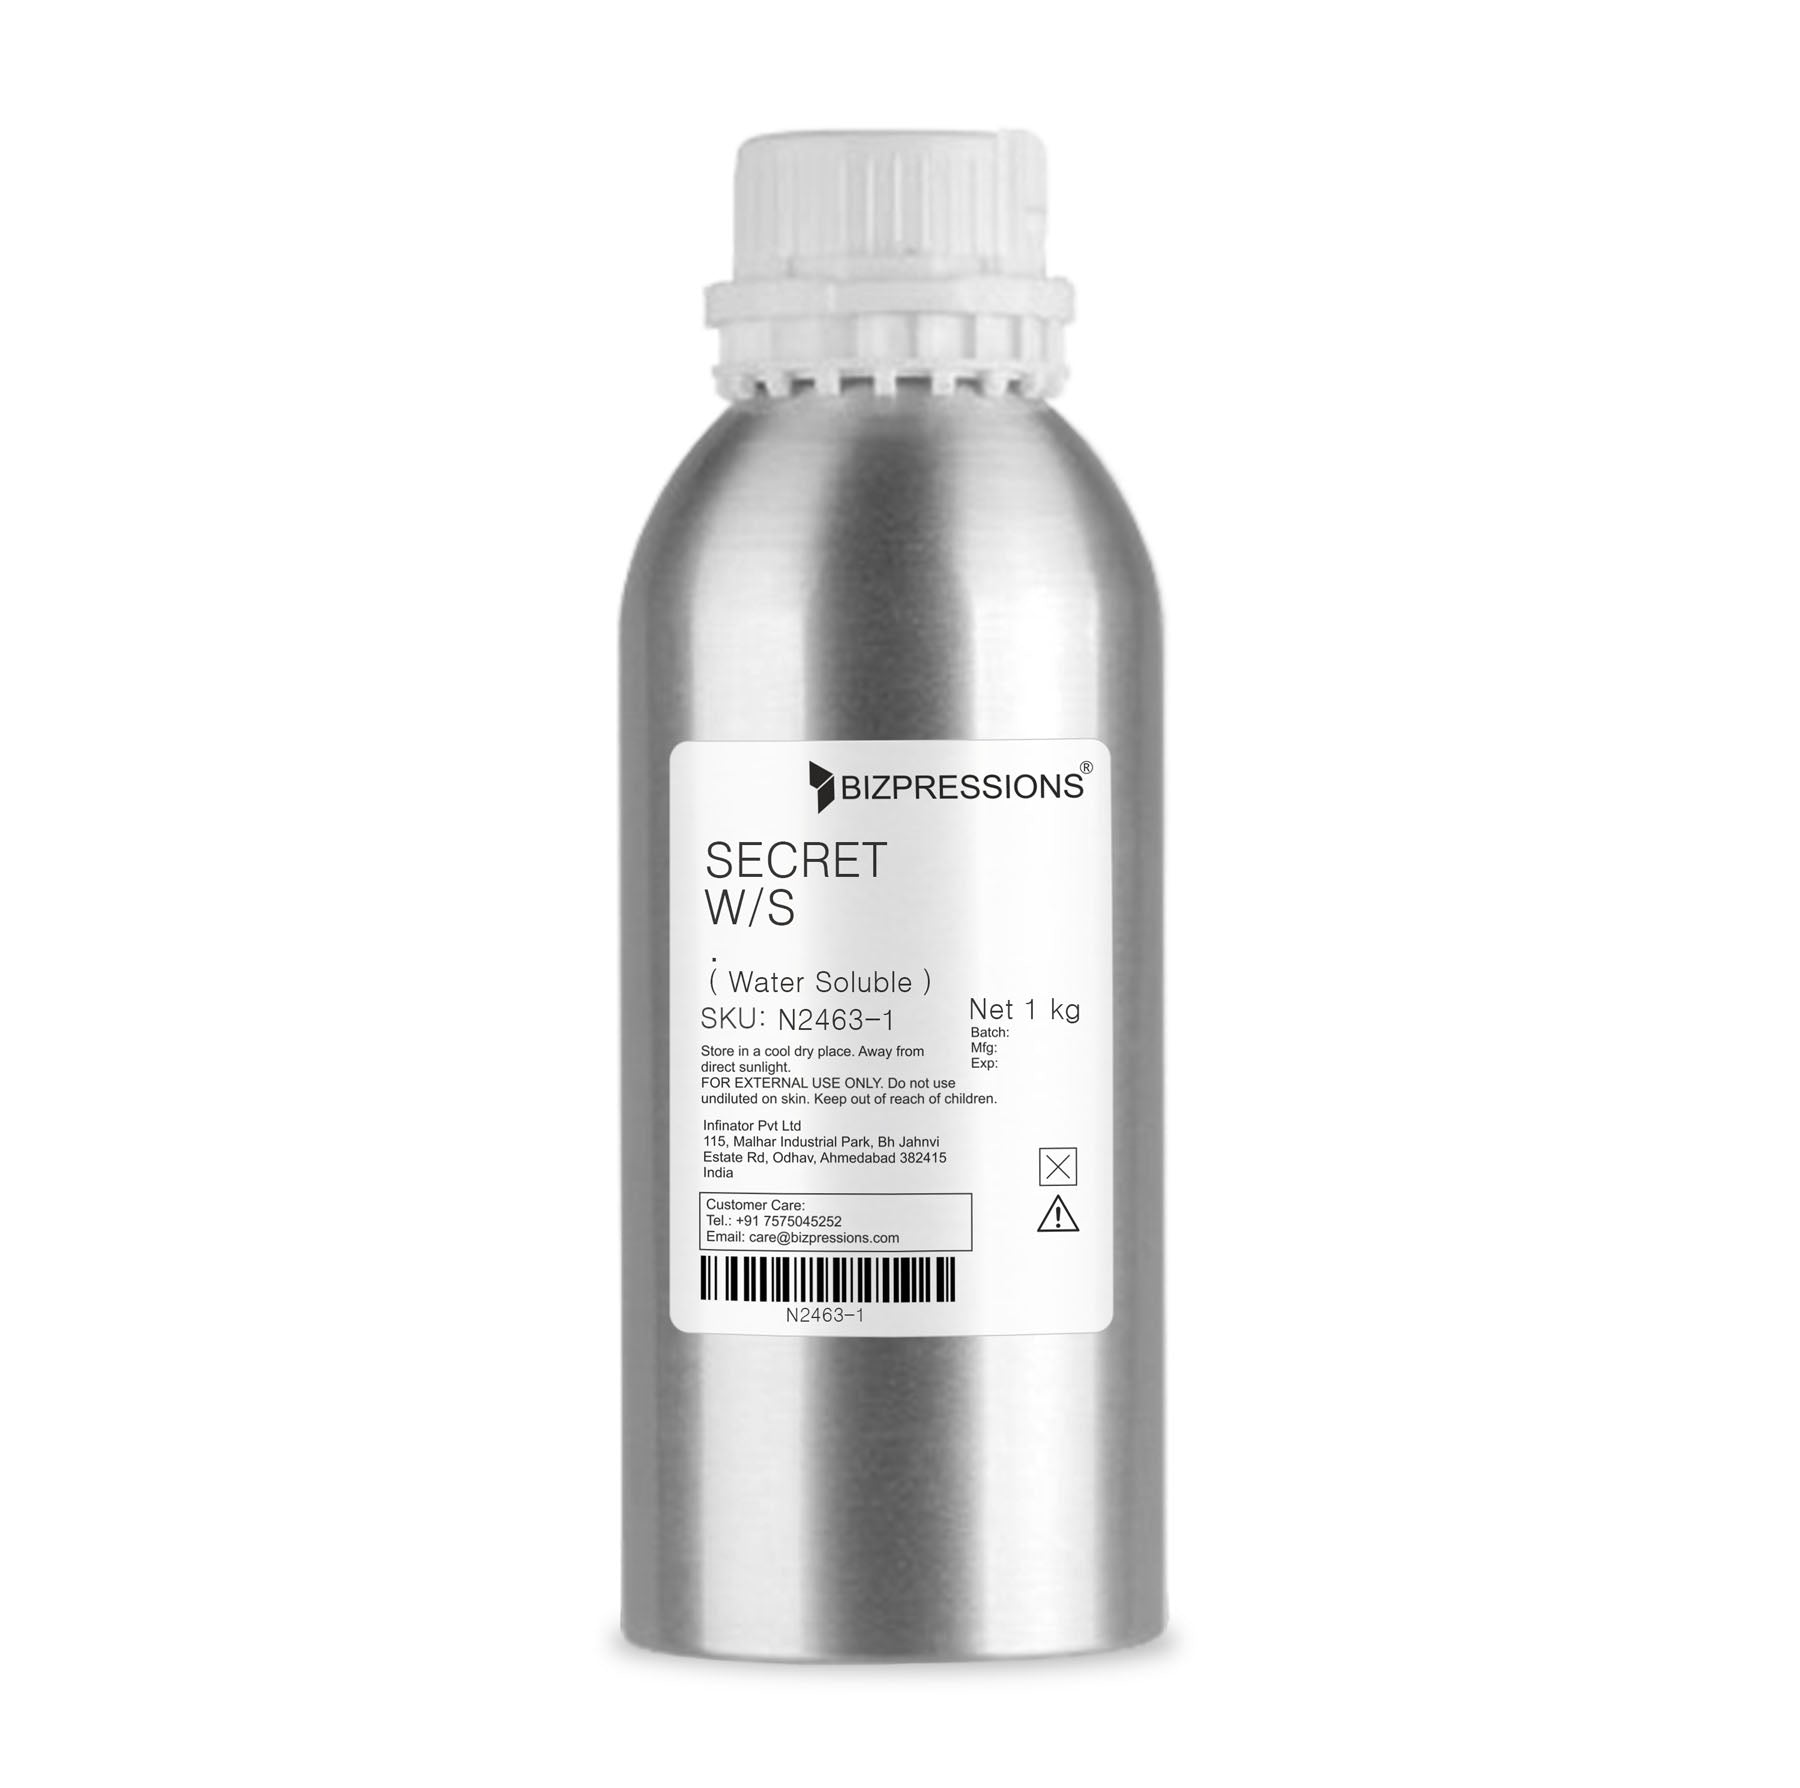 SECRET W/S - Fragrance ( Water Soluble ) - 1 kg